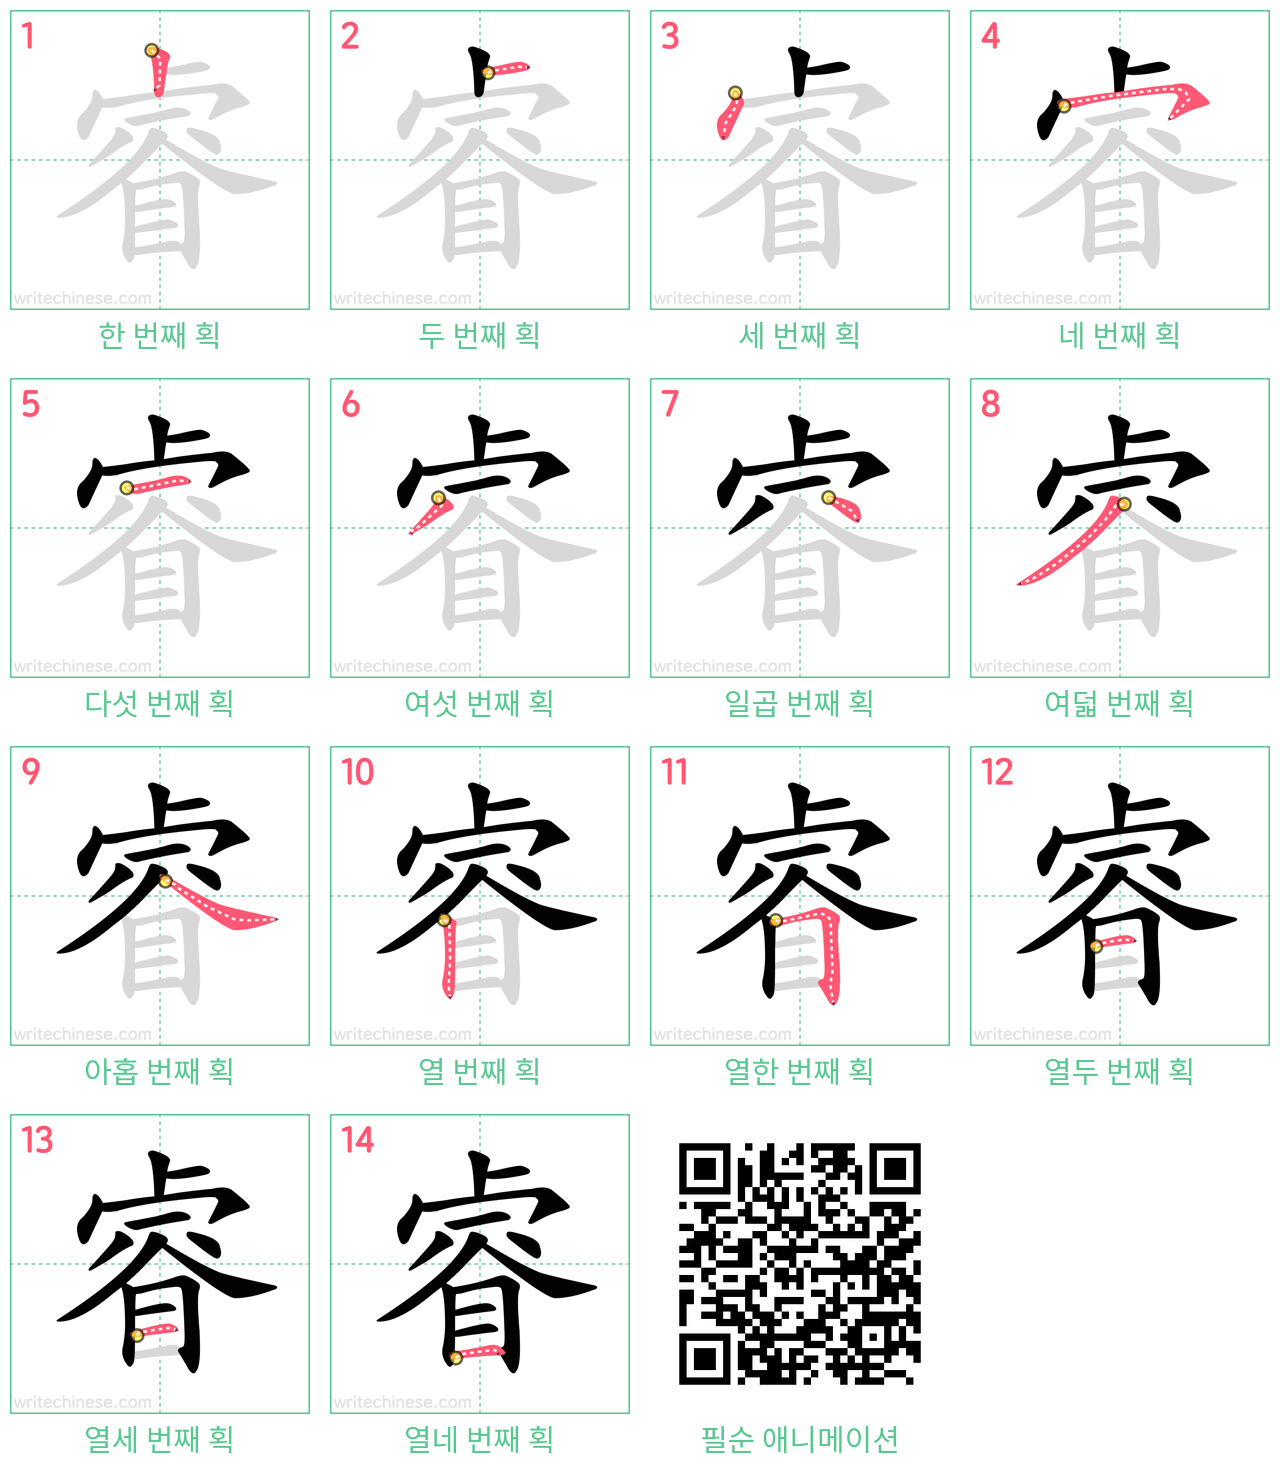 睿 step-by-step stroke order diagrams